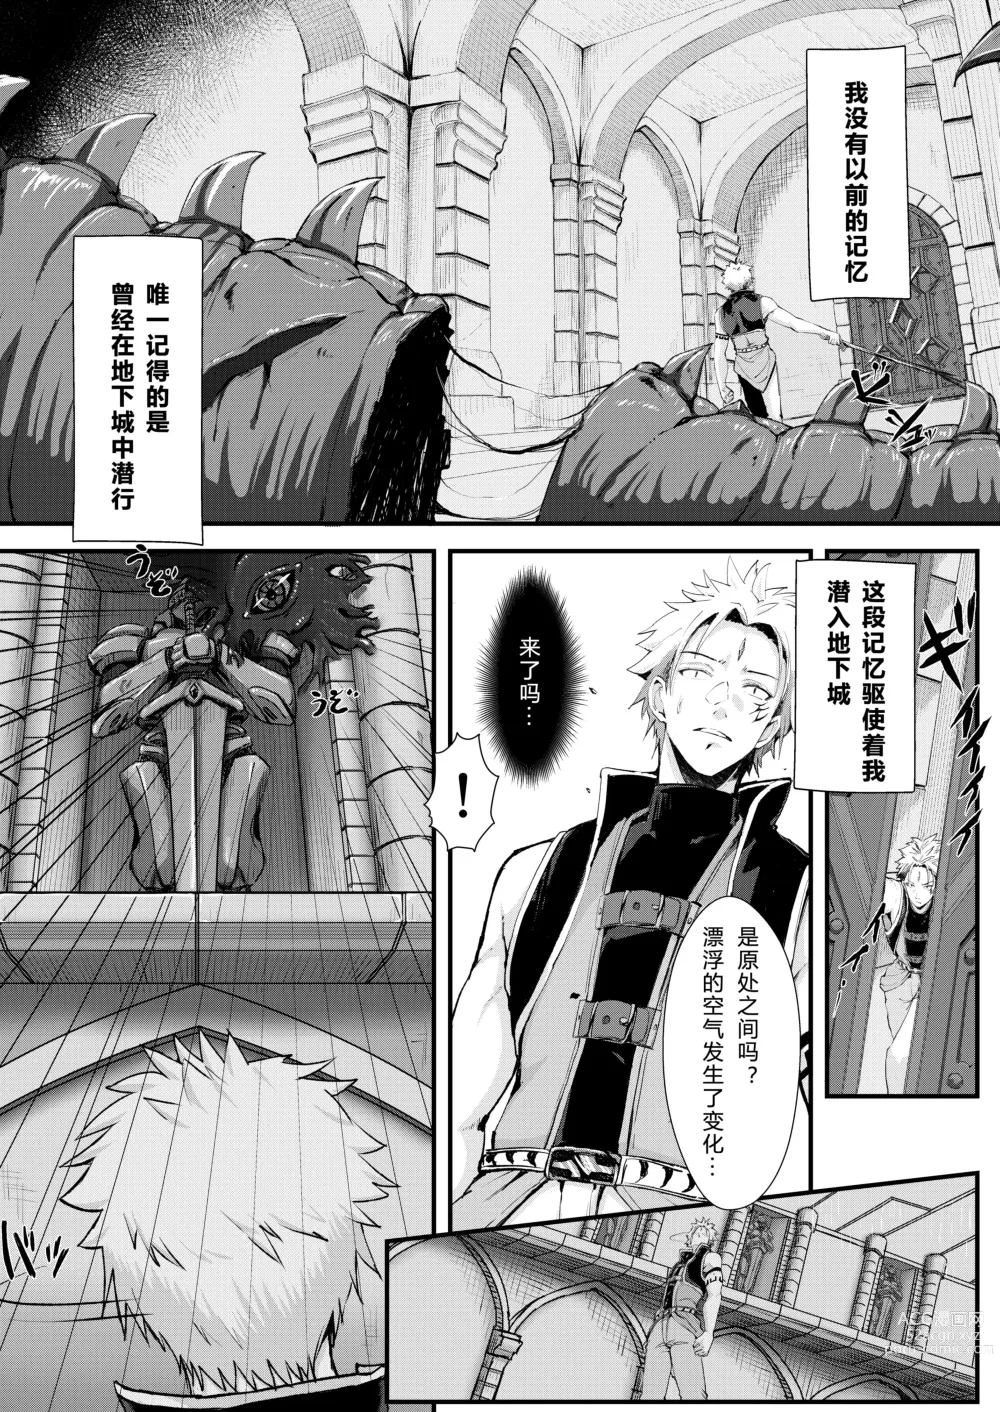 Page 3 of doujinshi 吉尔·罗伯特的地下城攻略!?